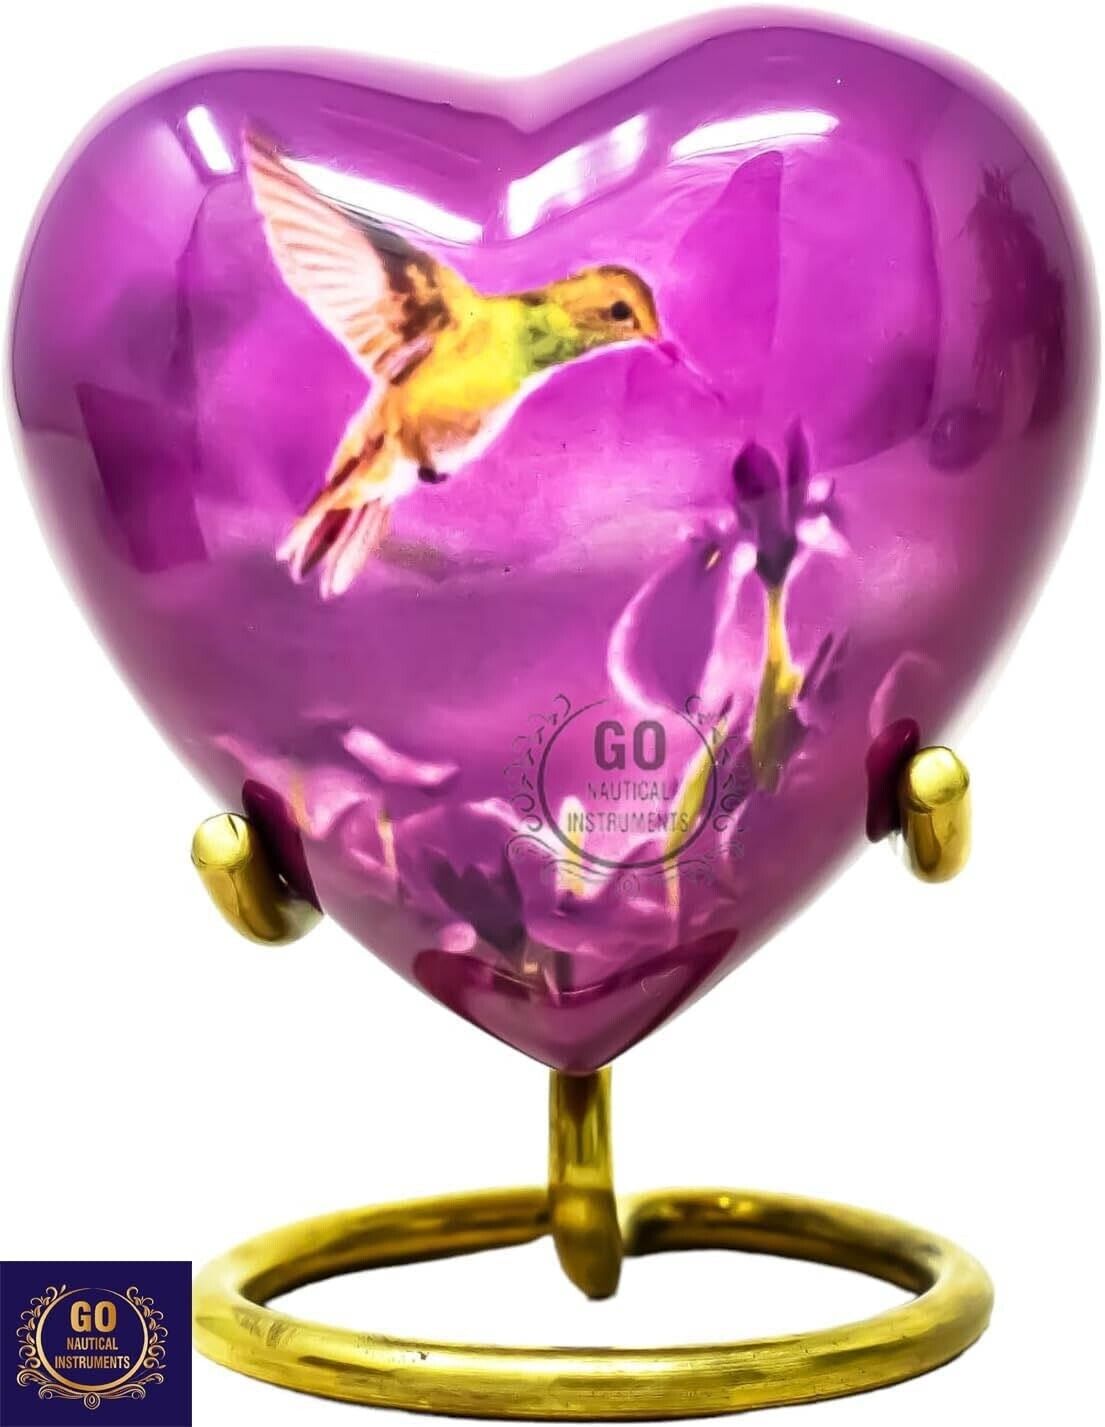 Hummingbird Print 3 Inch Purple Mini Heart Urn Decorative Urns Box & Stand